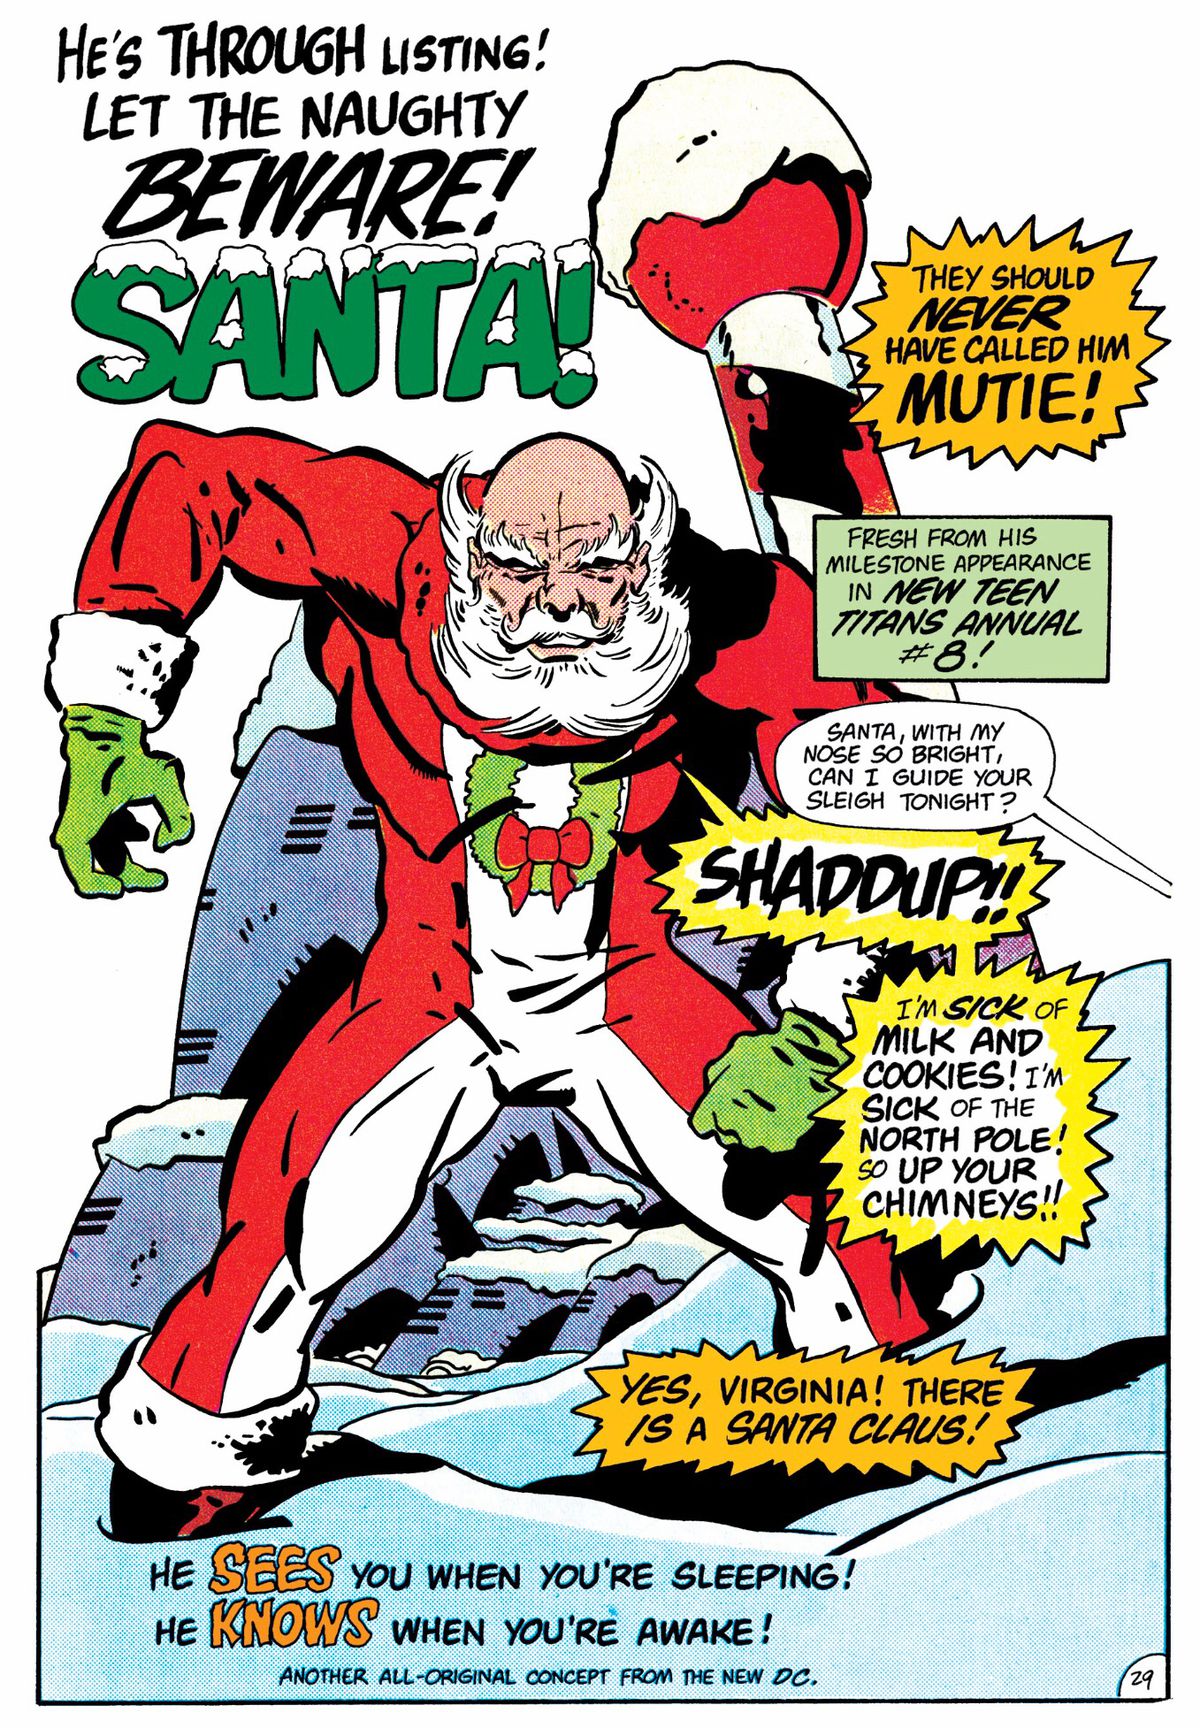 “Han har genom listan!  Låt den stygga se upp! ”  skriker en bildtext över en starkt muskulös jultomten som ritas väldigt mycket i Jack Kirby-stil.  